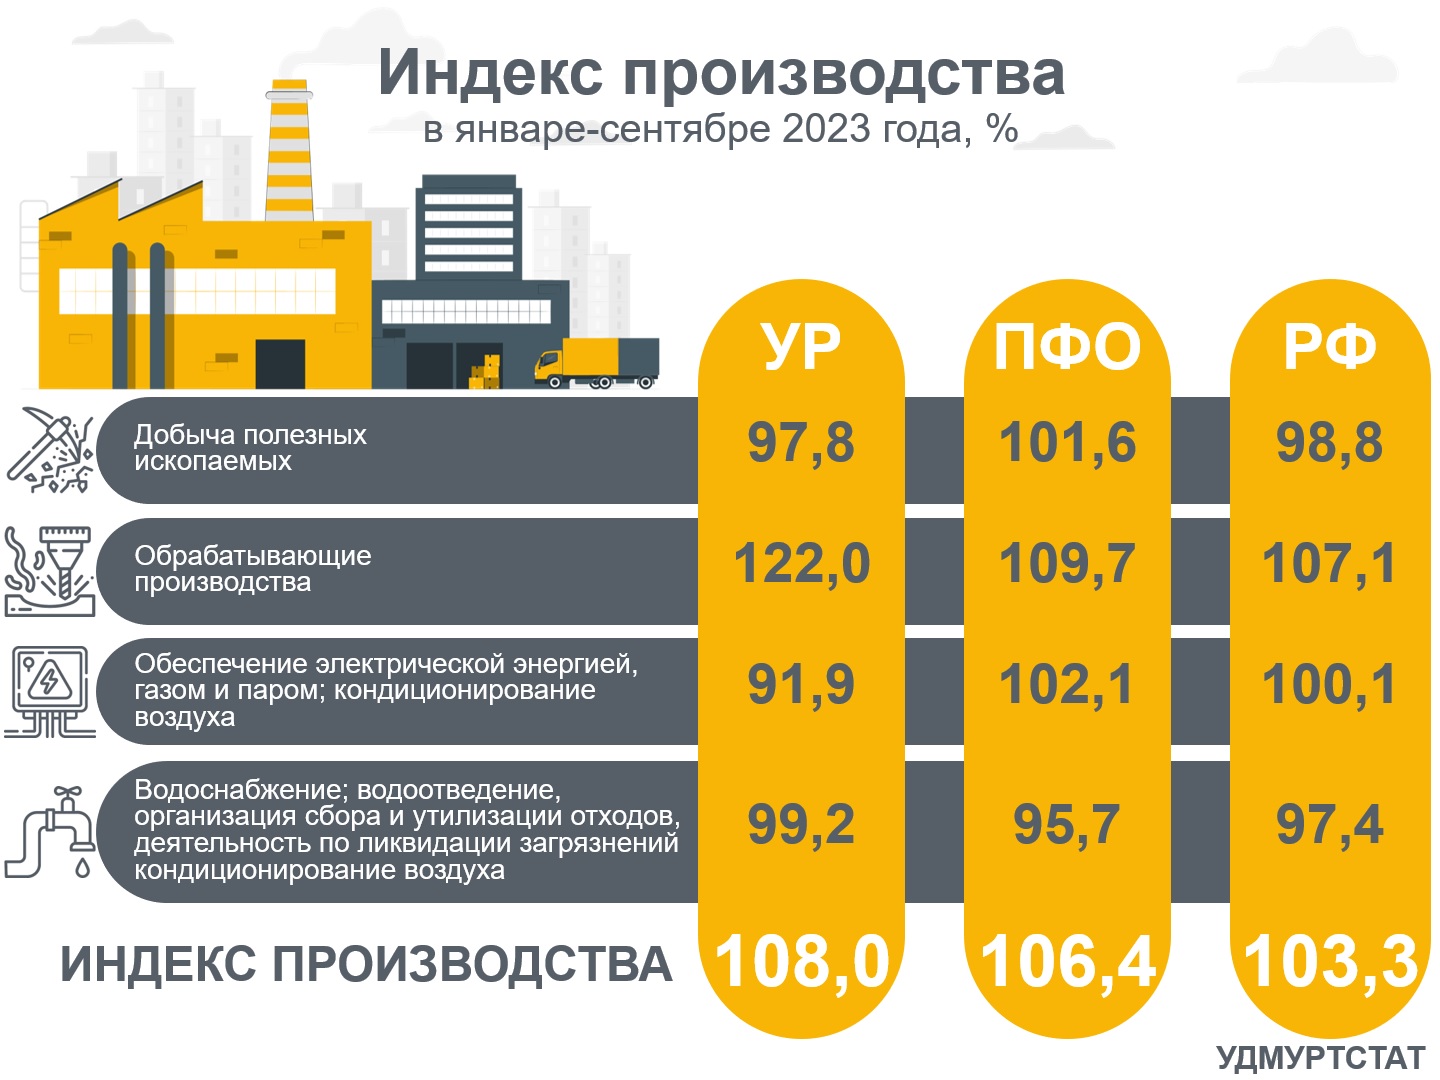 Индекс производства УР в сравнении с ПФО и РФ в январе-сентябре 2023 года.